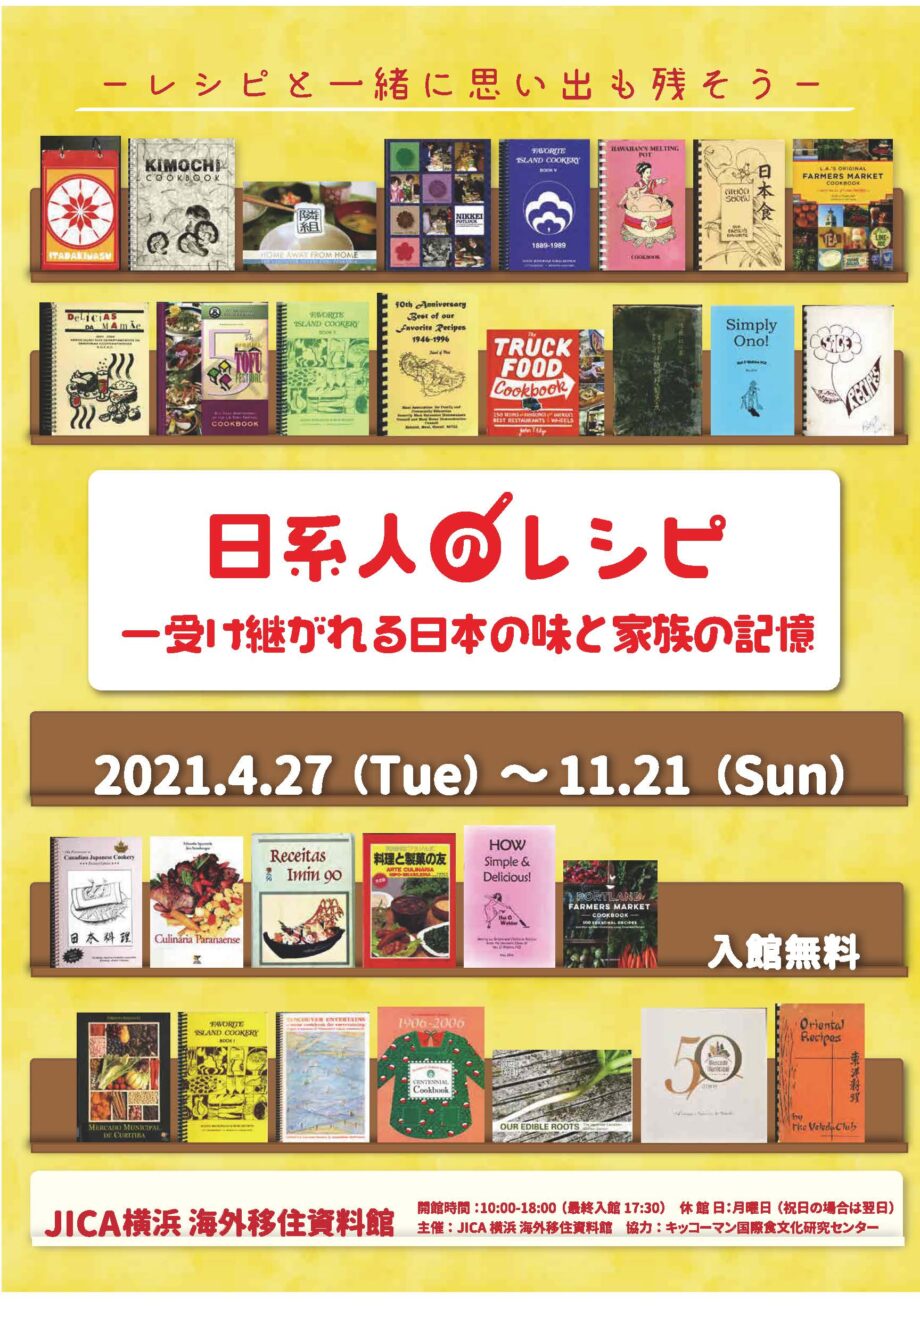 食で振り返る社会記録「日系人のレシピ−受け継がれる日本の味と家族の記録−」 中区のJICA横浜で企画展